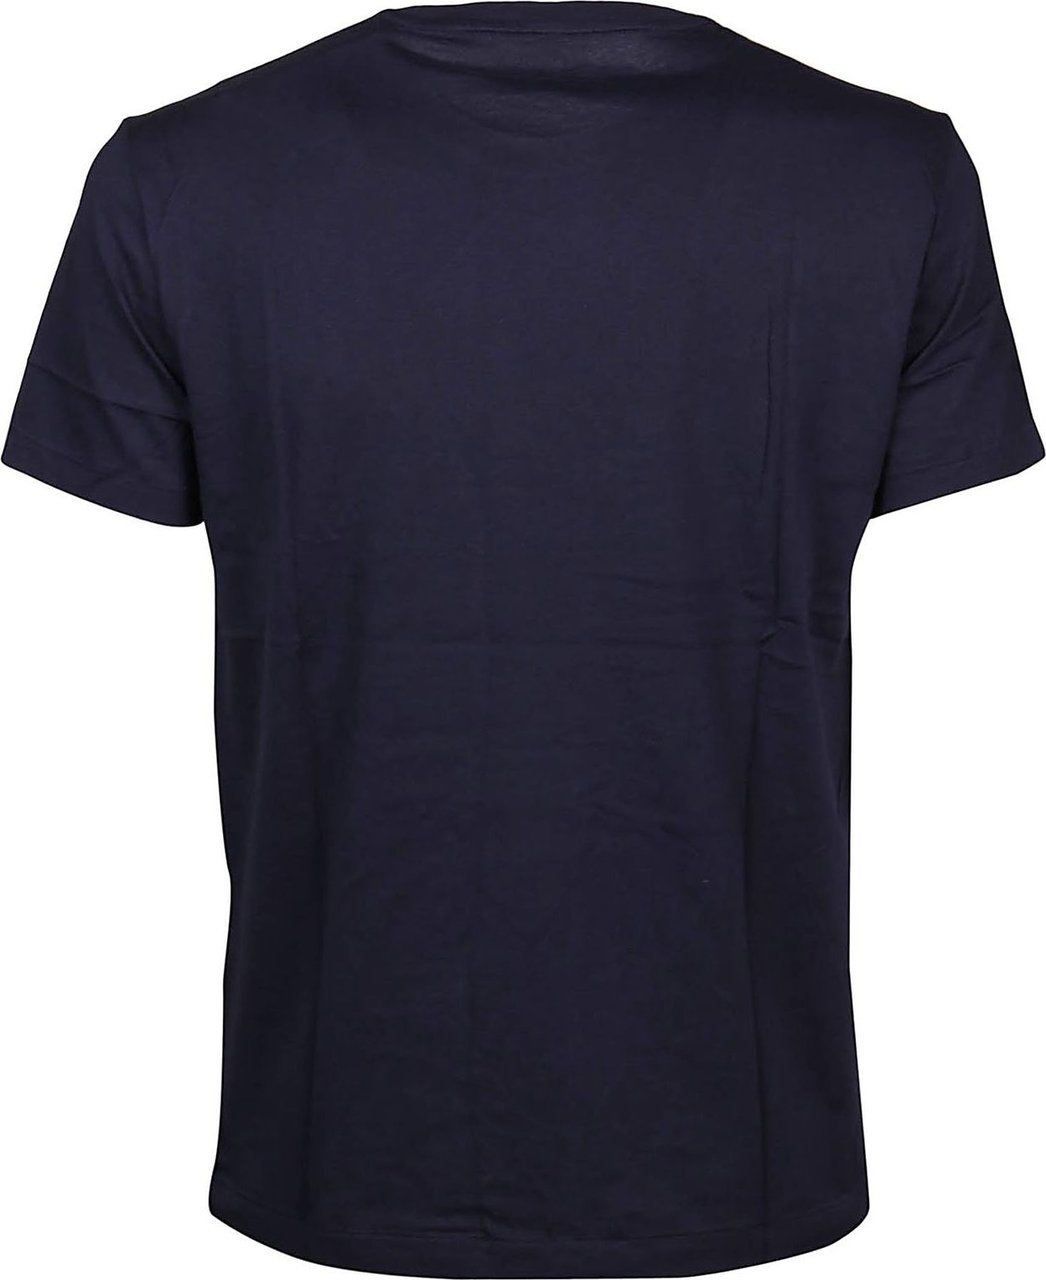 Ralph Lauren T-shirt Blue Blauw